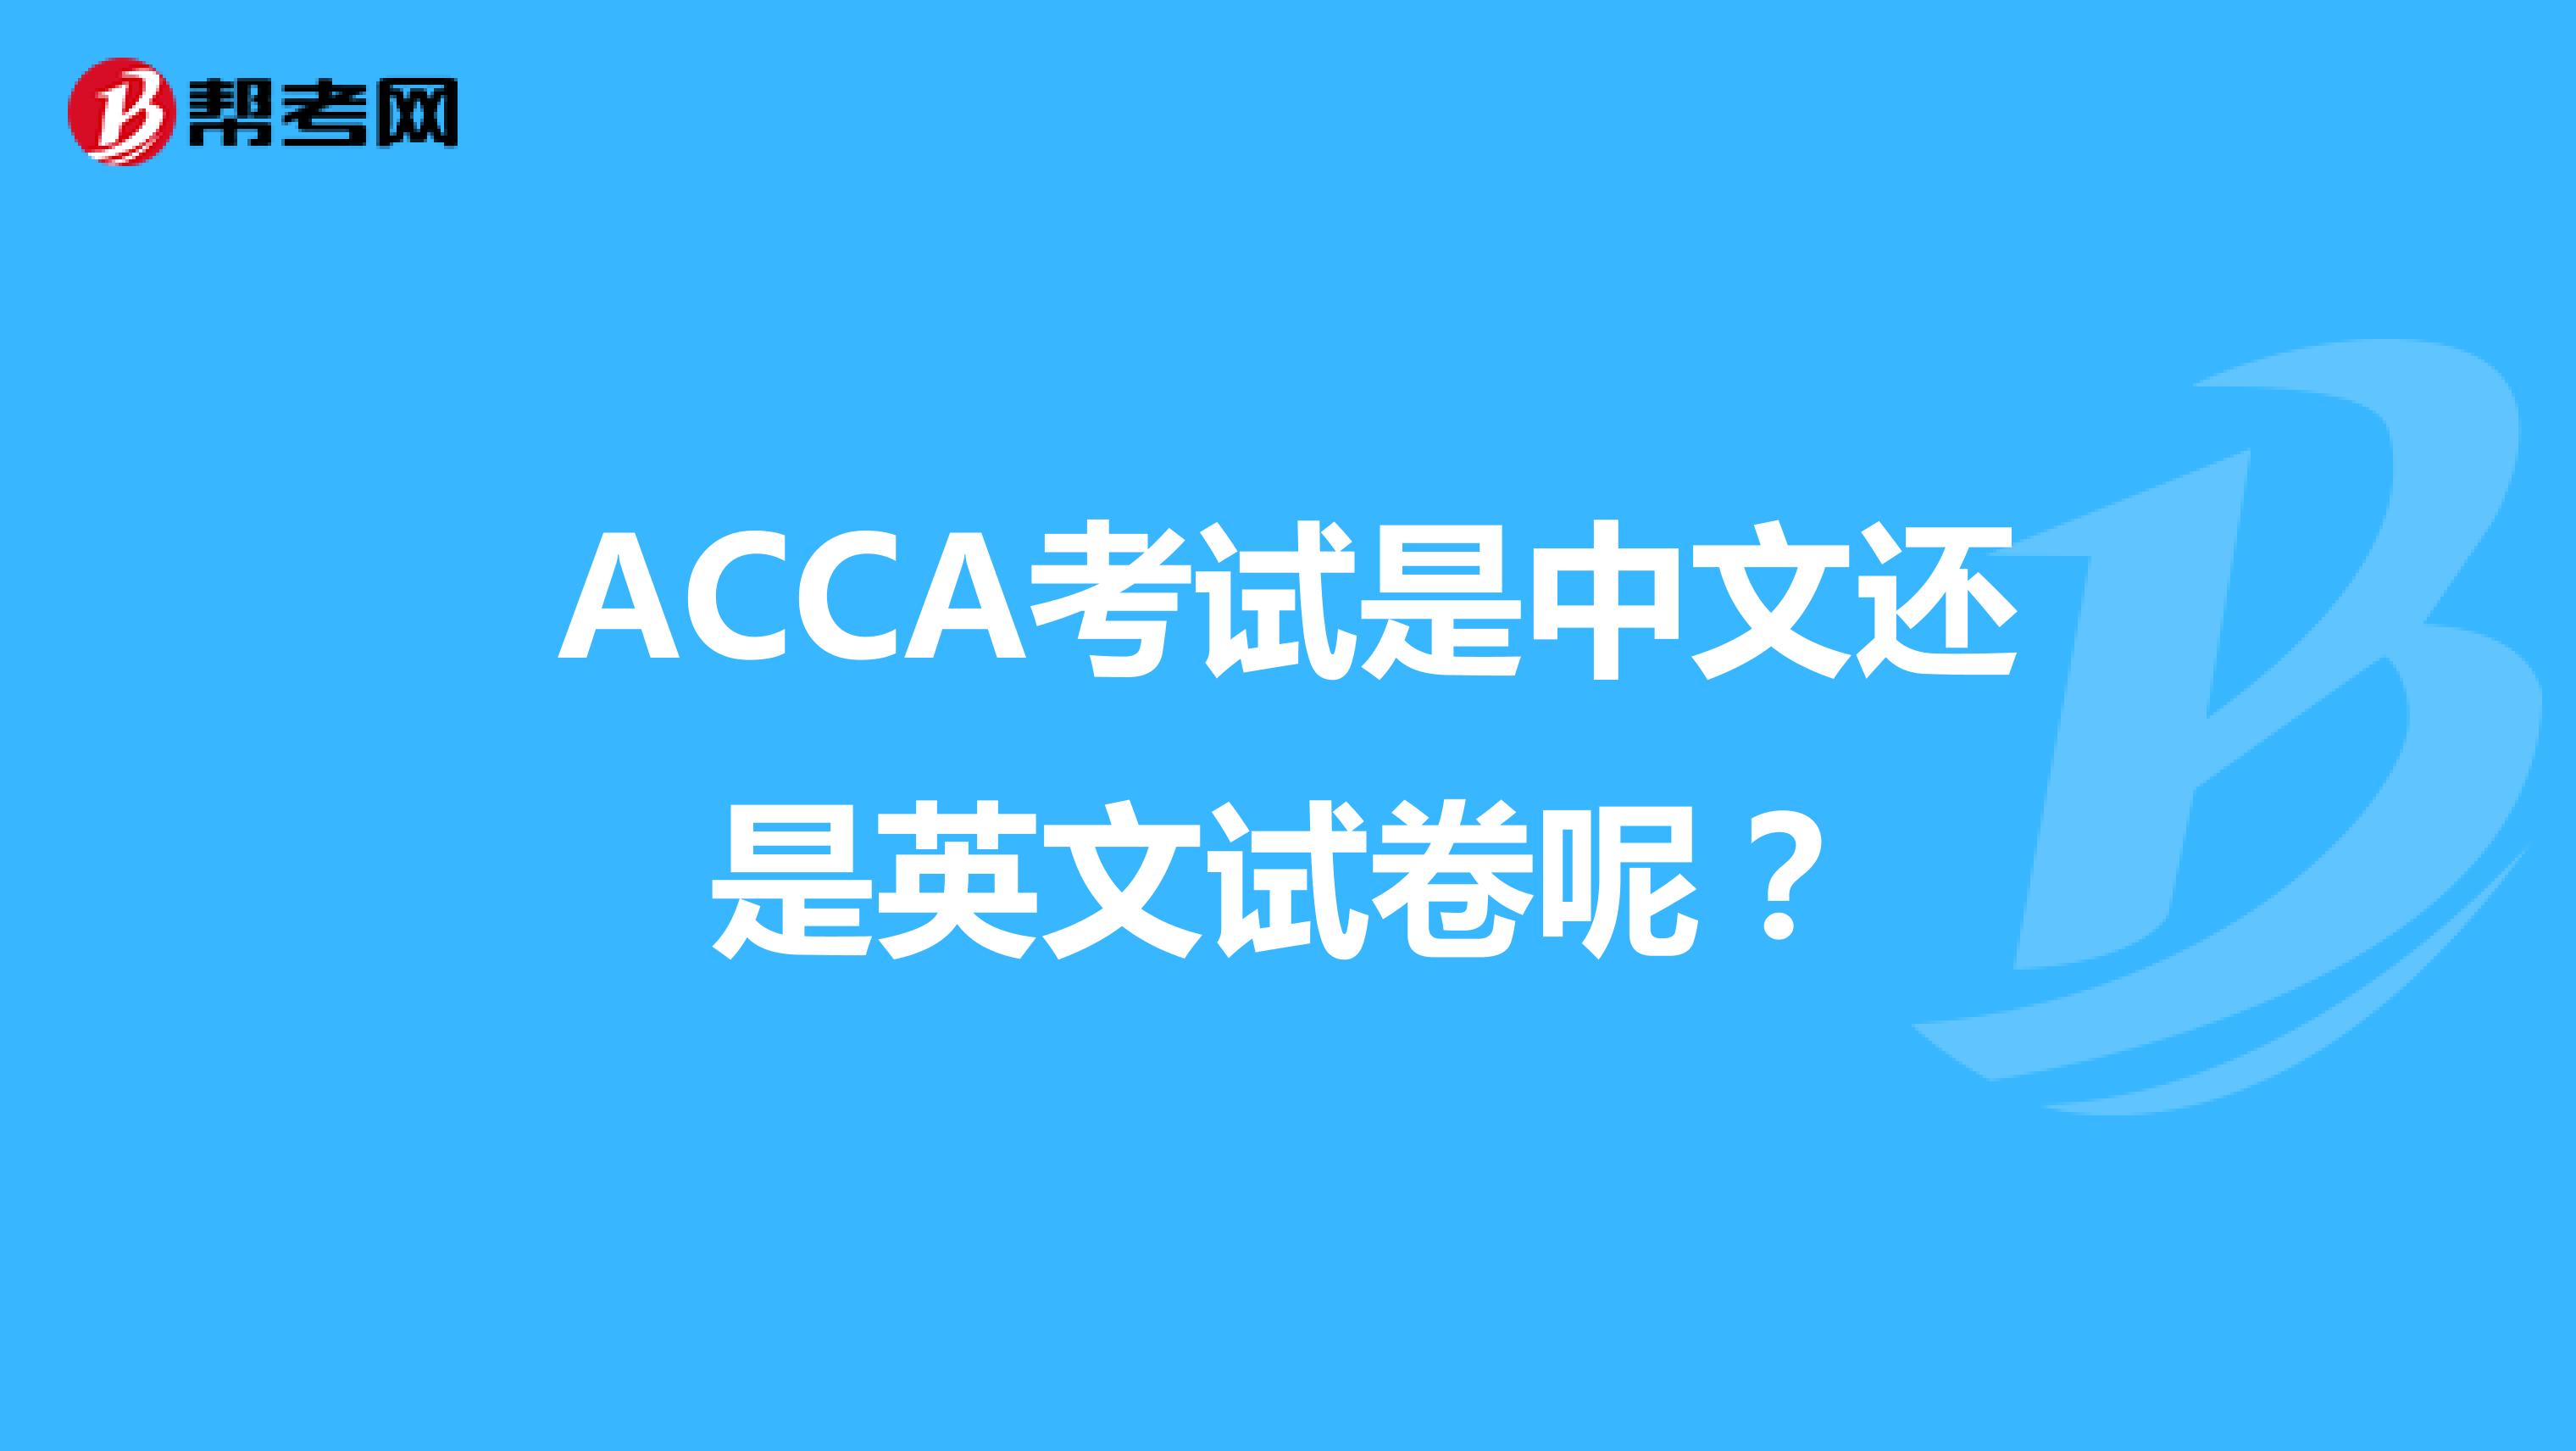 ACCA考试是中文还是英文试卷呢？